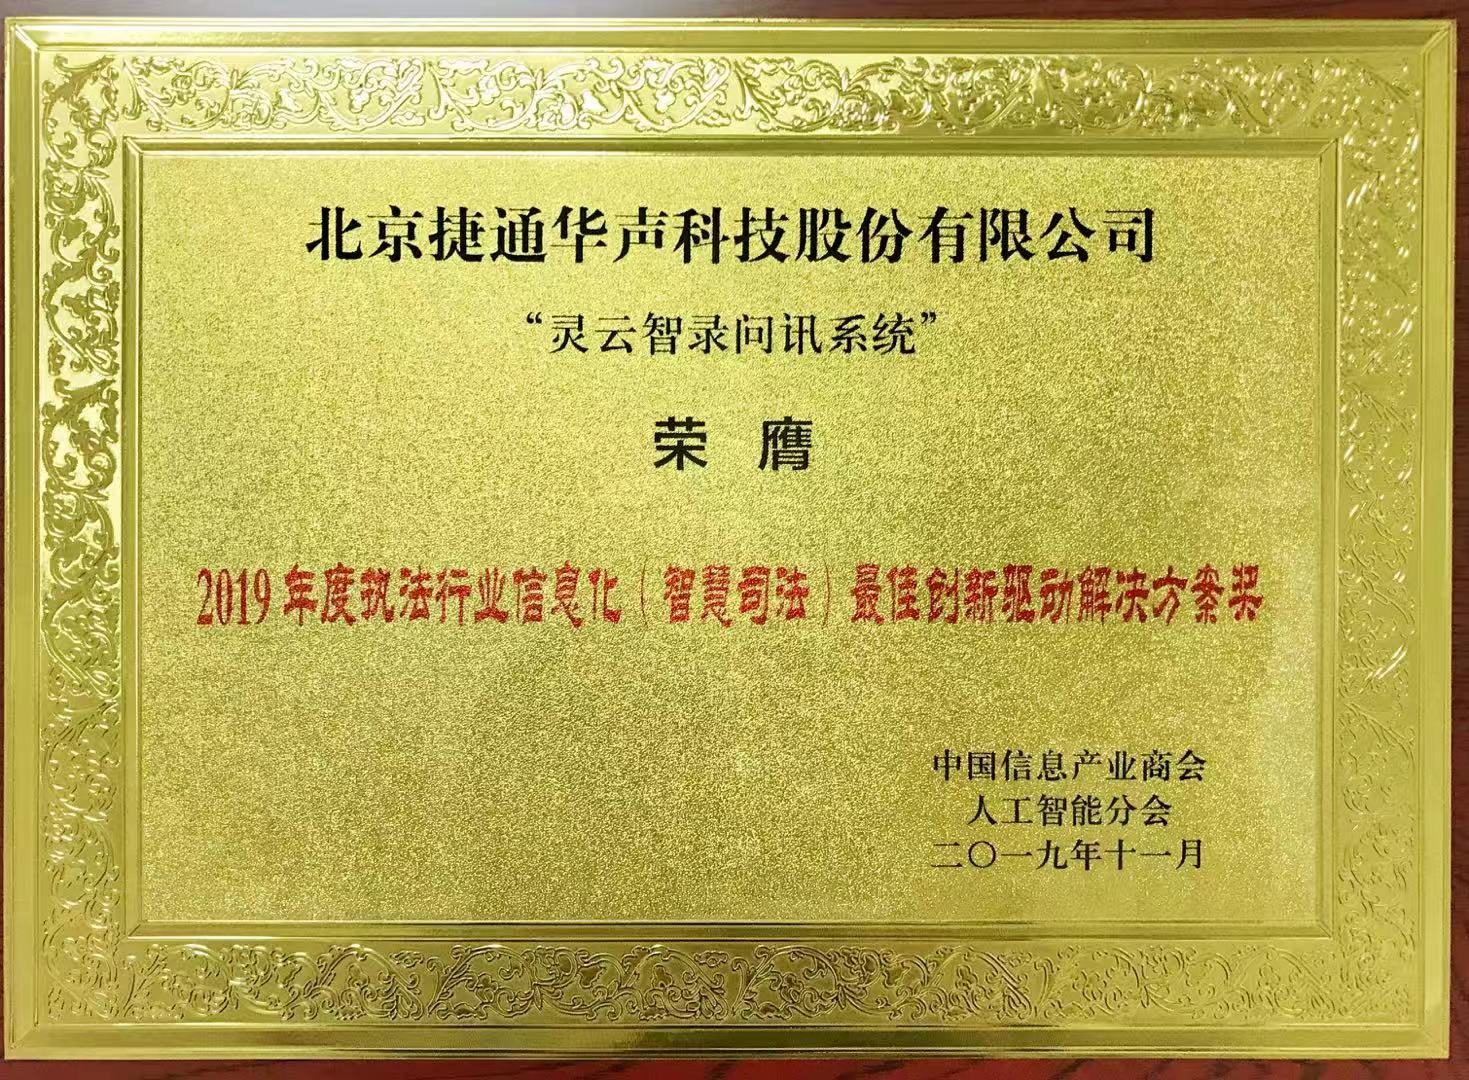 捷通华声荣获2019执法行业信息化（智慧司法）最佳创新驱动解决方